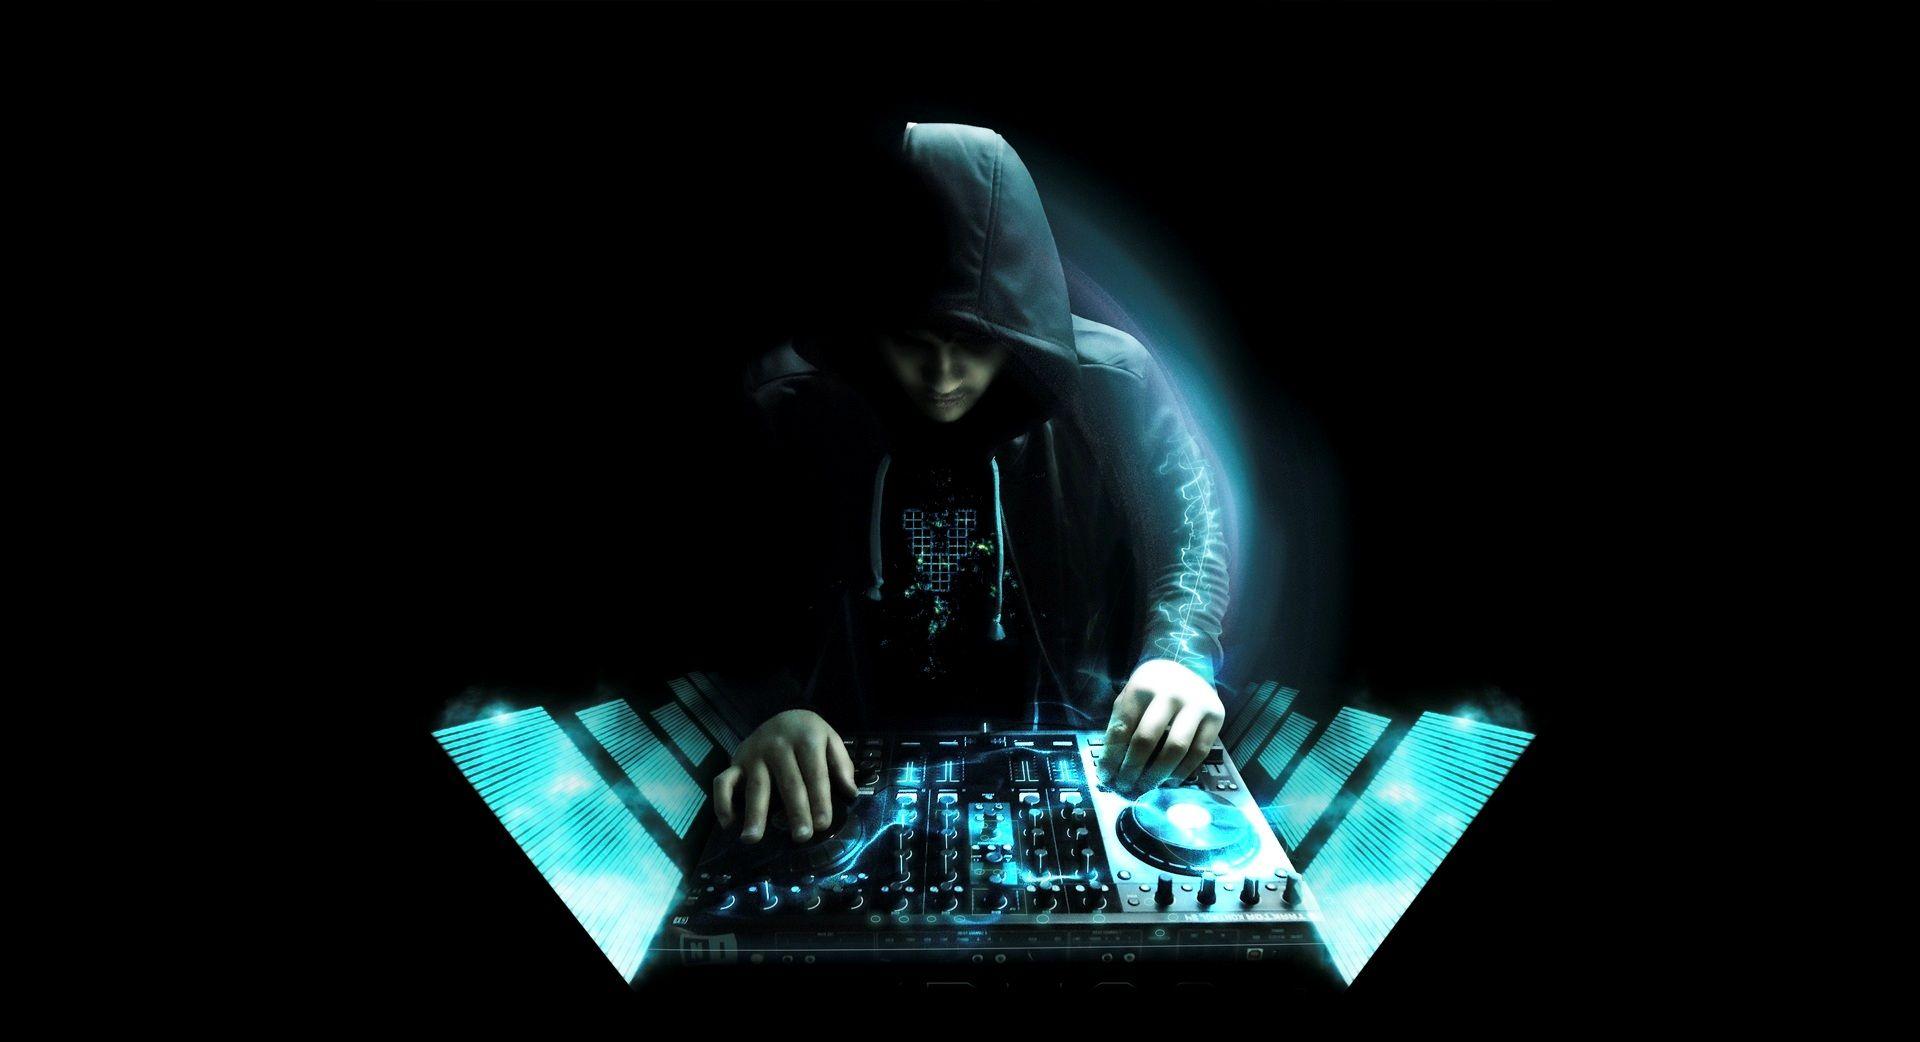 DJ Wallpaper, Top DJ HQ Photo, DJ WD 36 Wallpaper